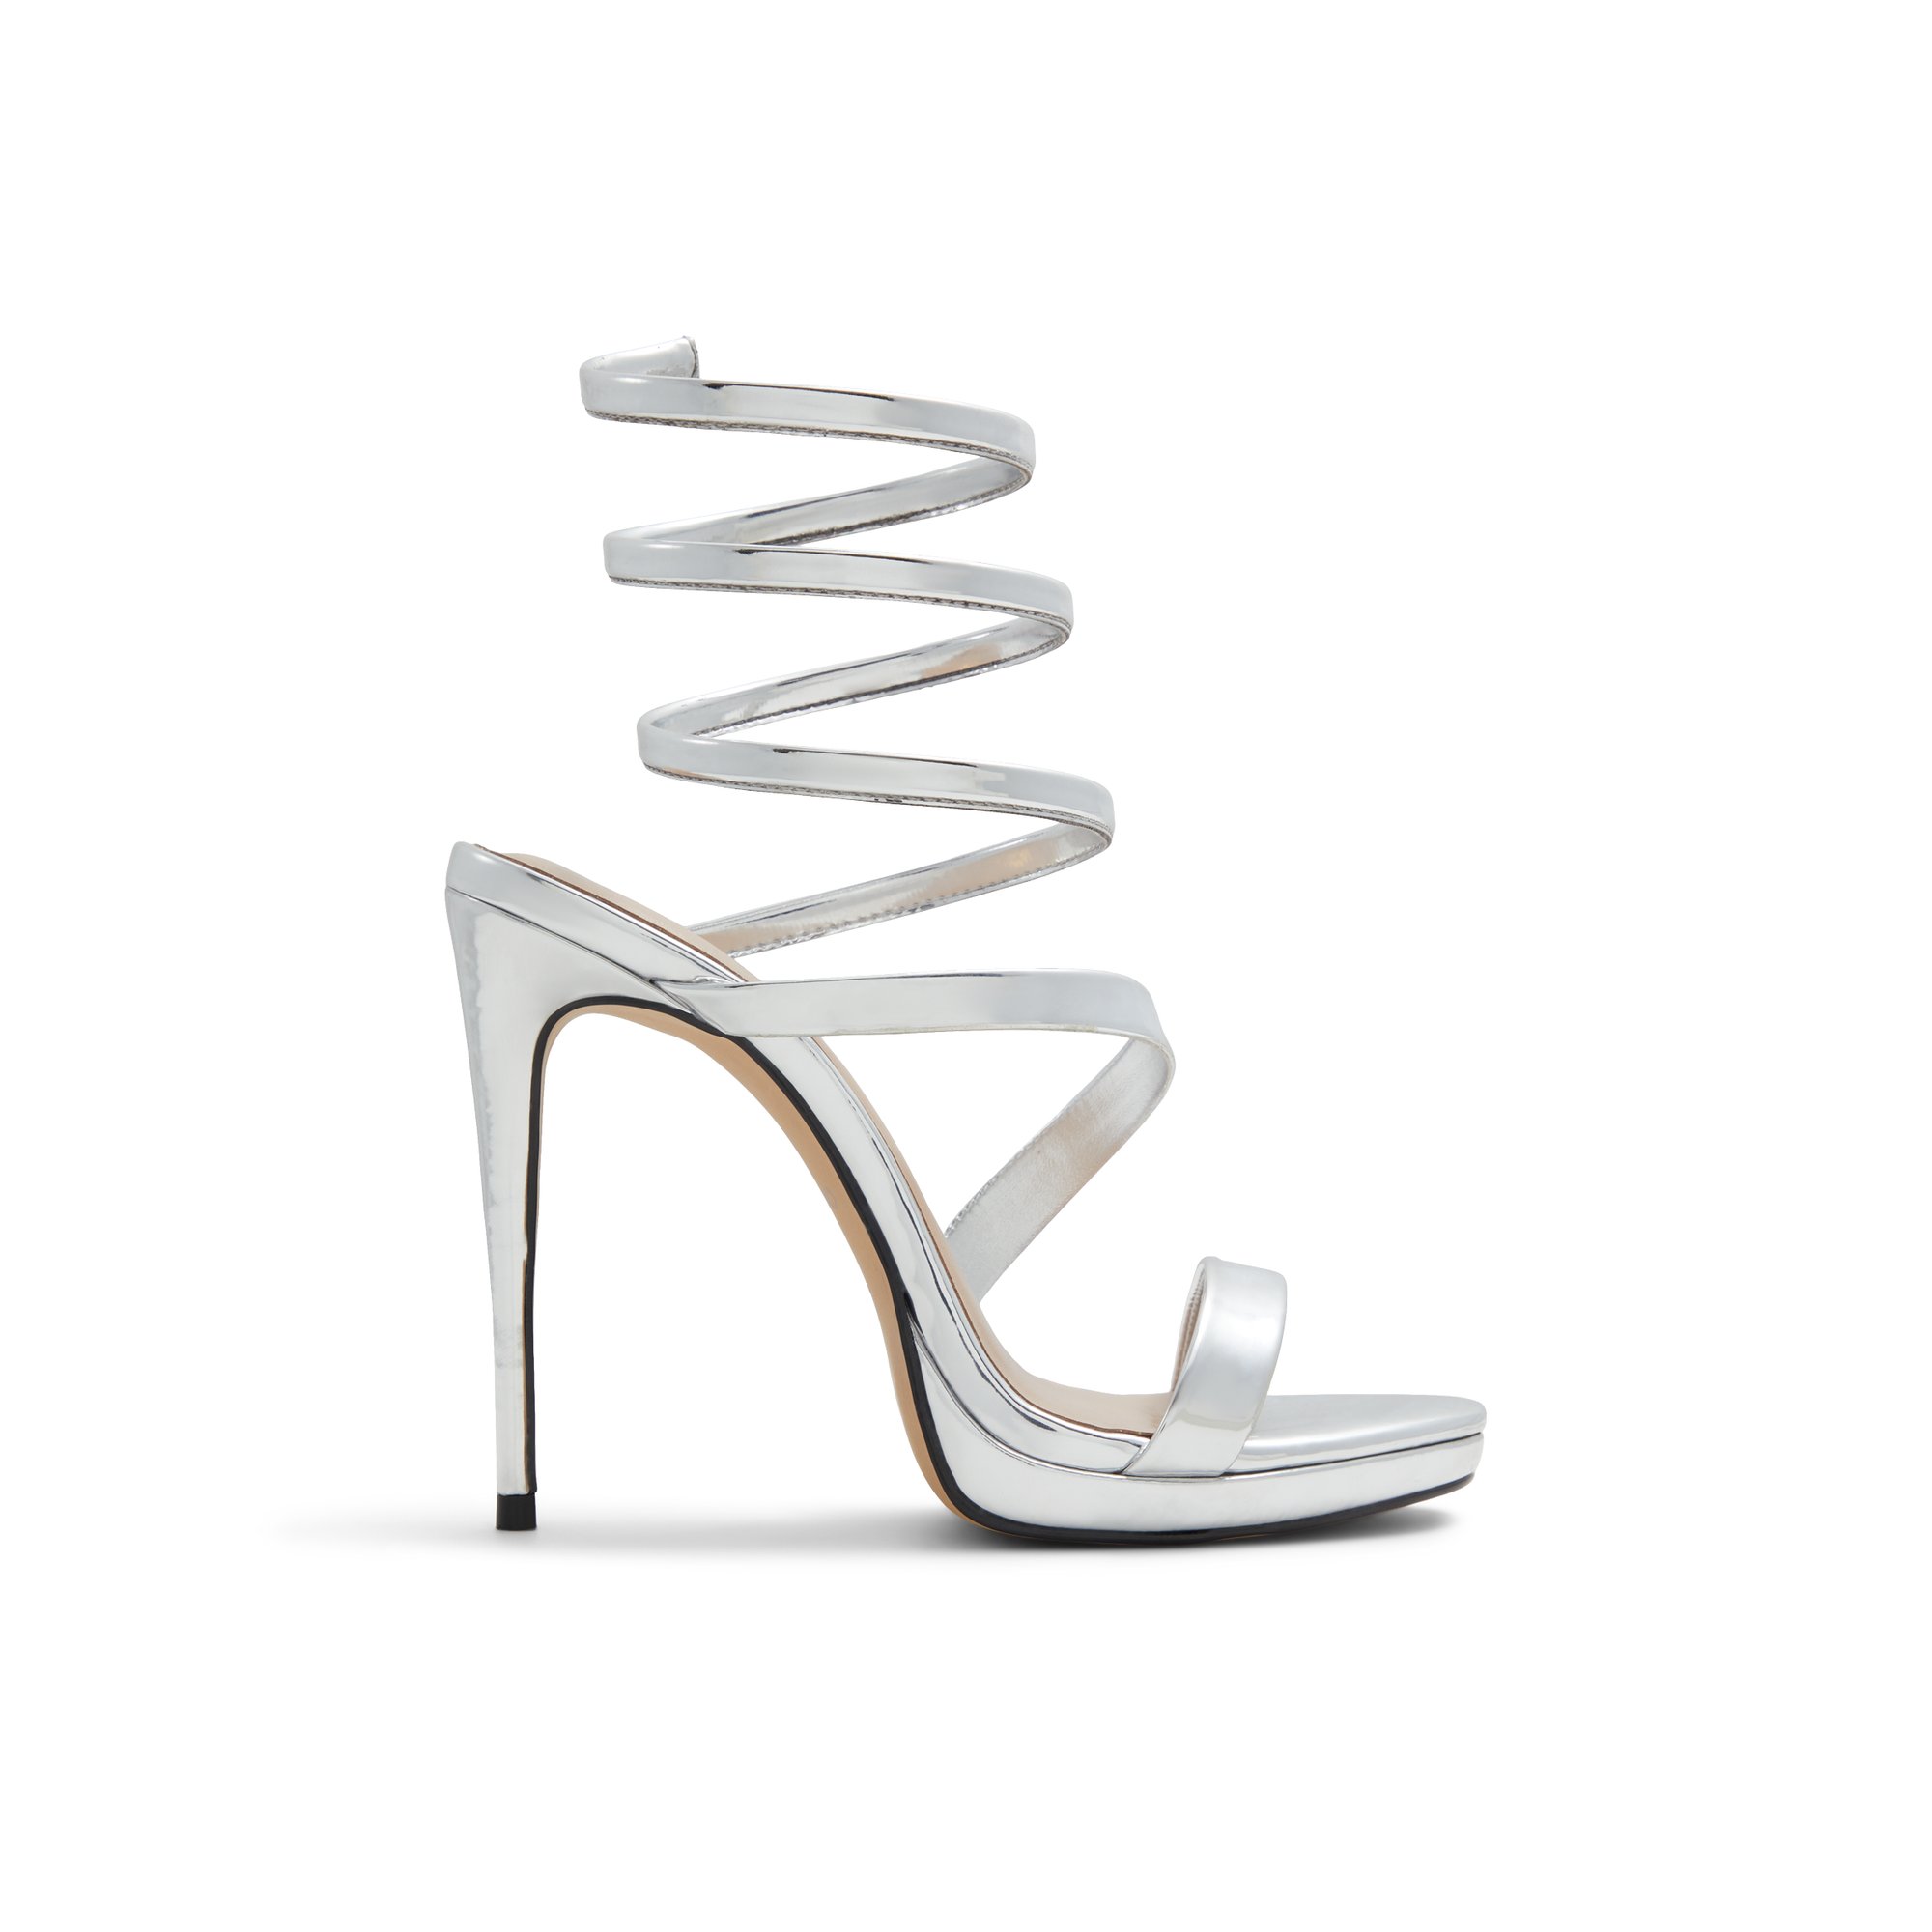 ALDO Katswirl - Women's Sandals Strappy - Silver